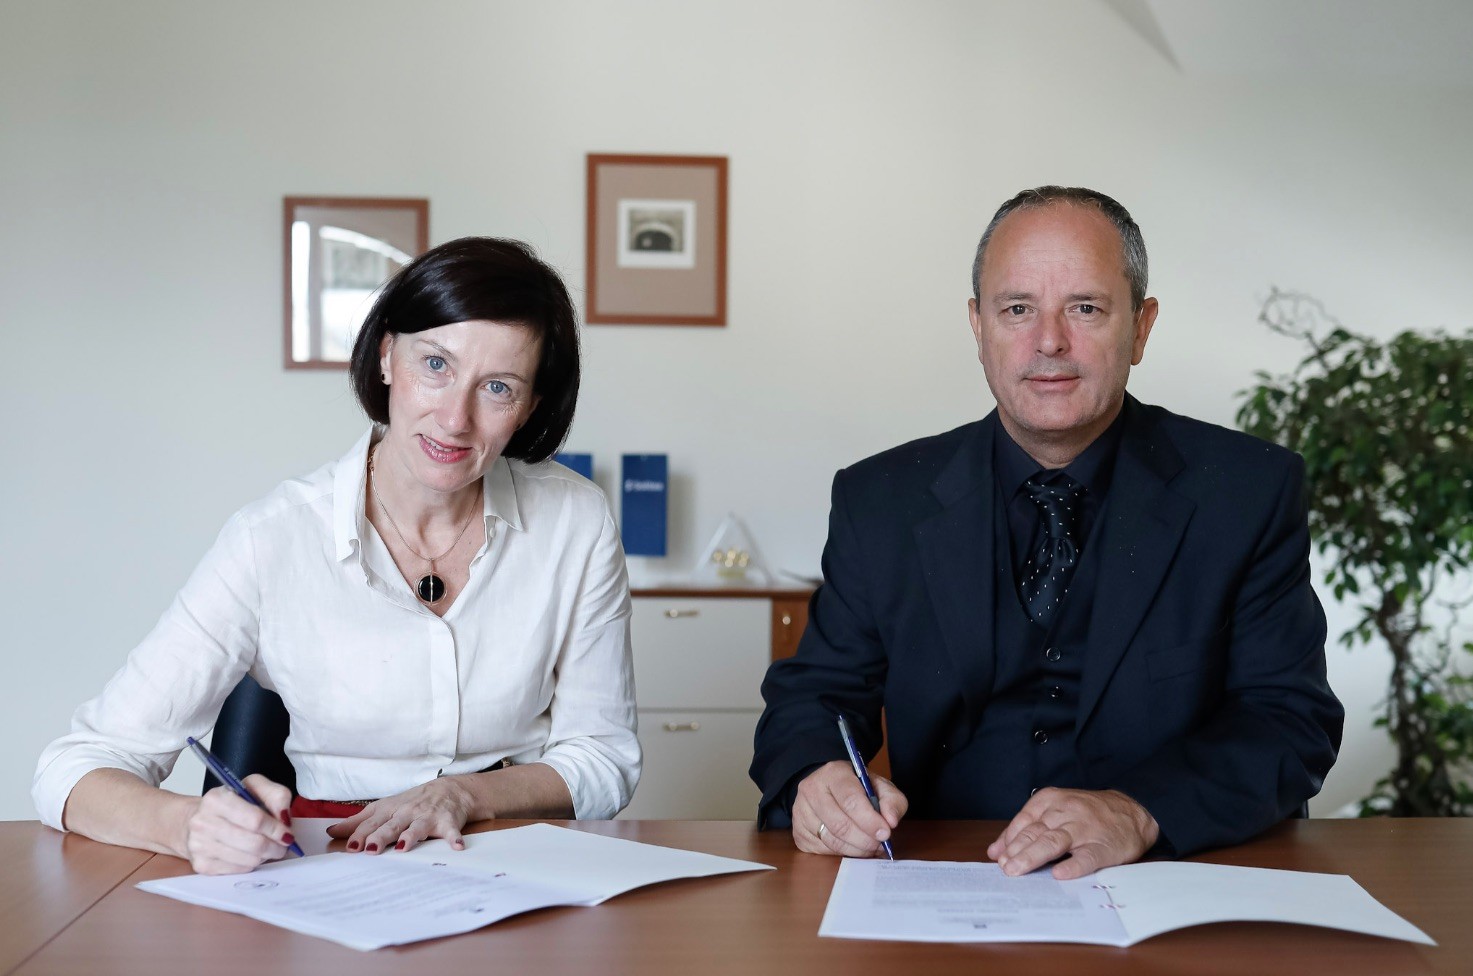 Slovinská společnost Saop, člen skupiny Solitea, dokončila akvizici 100% podílu Opal Informatika